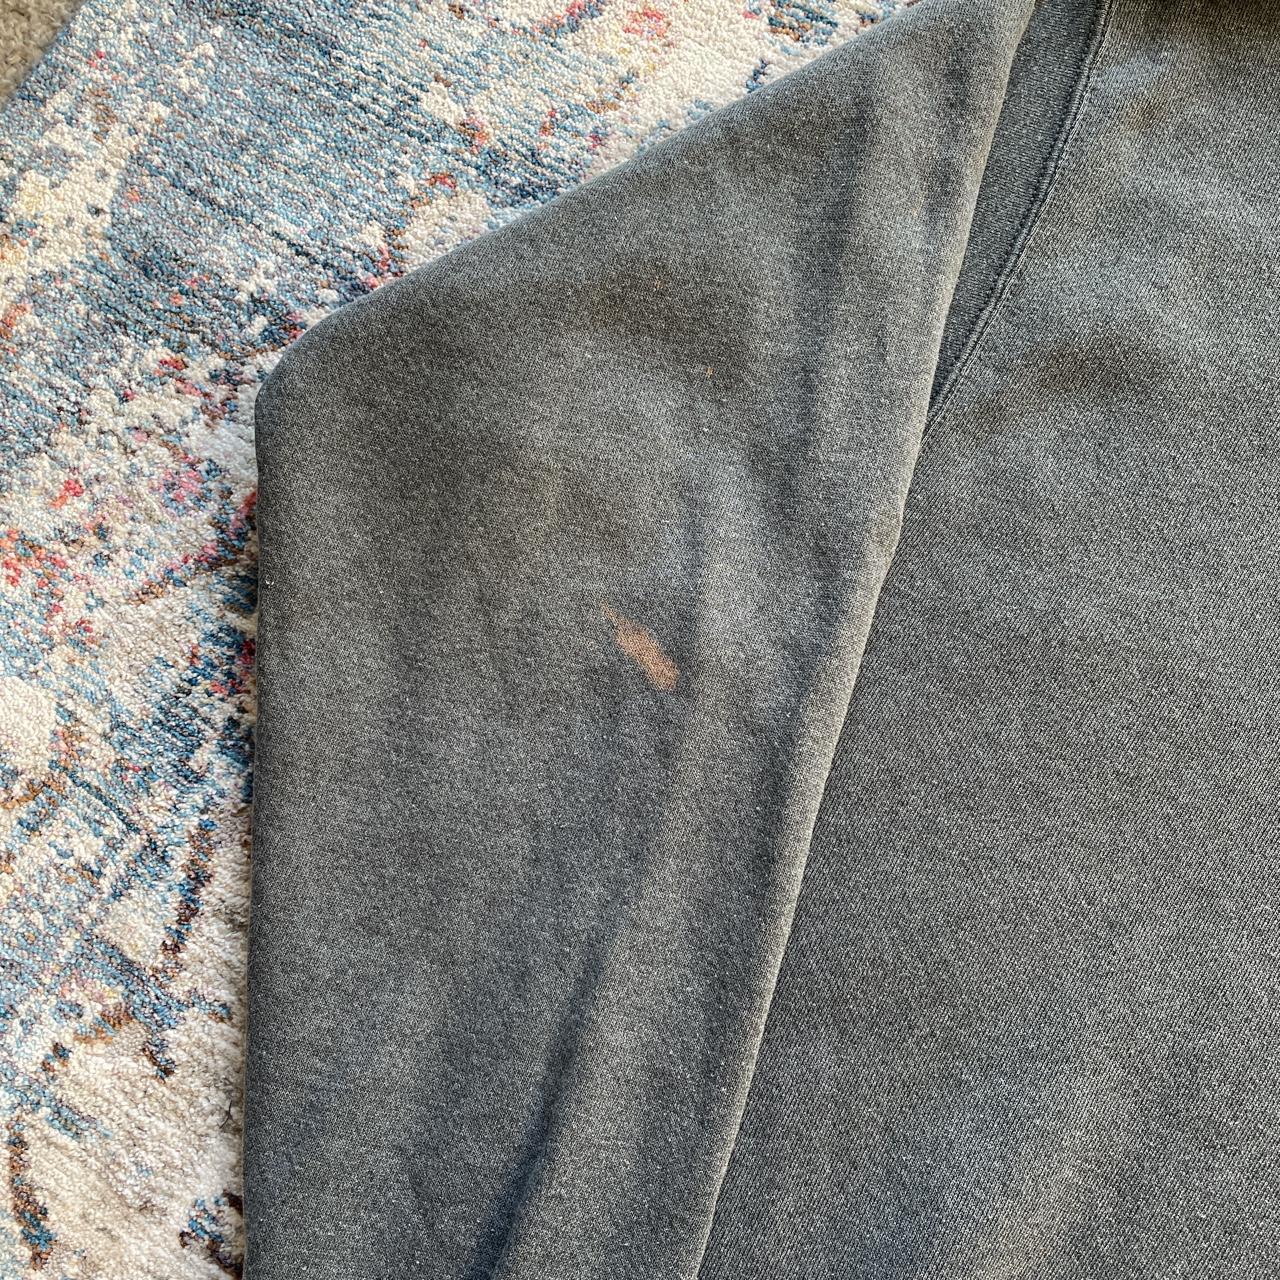 Vintage Grey Nike Spell Out Sweatshirt